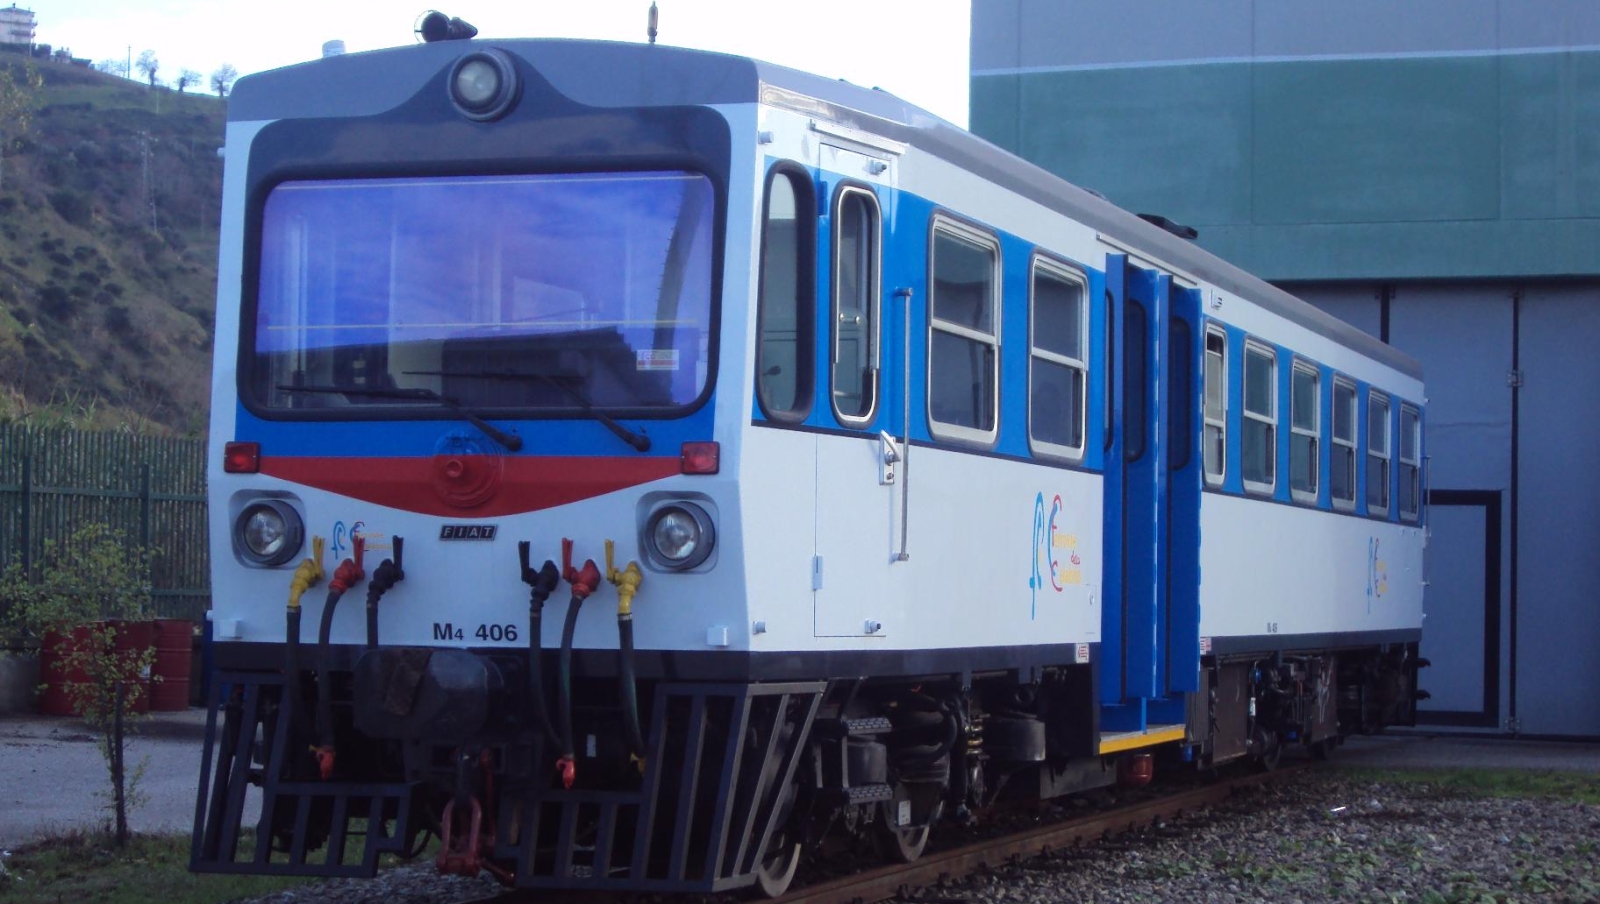 M4.406 of the Ferrovie della Calabria in Cosenza